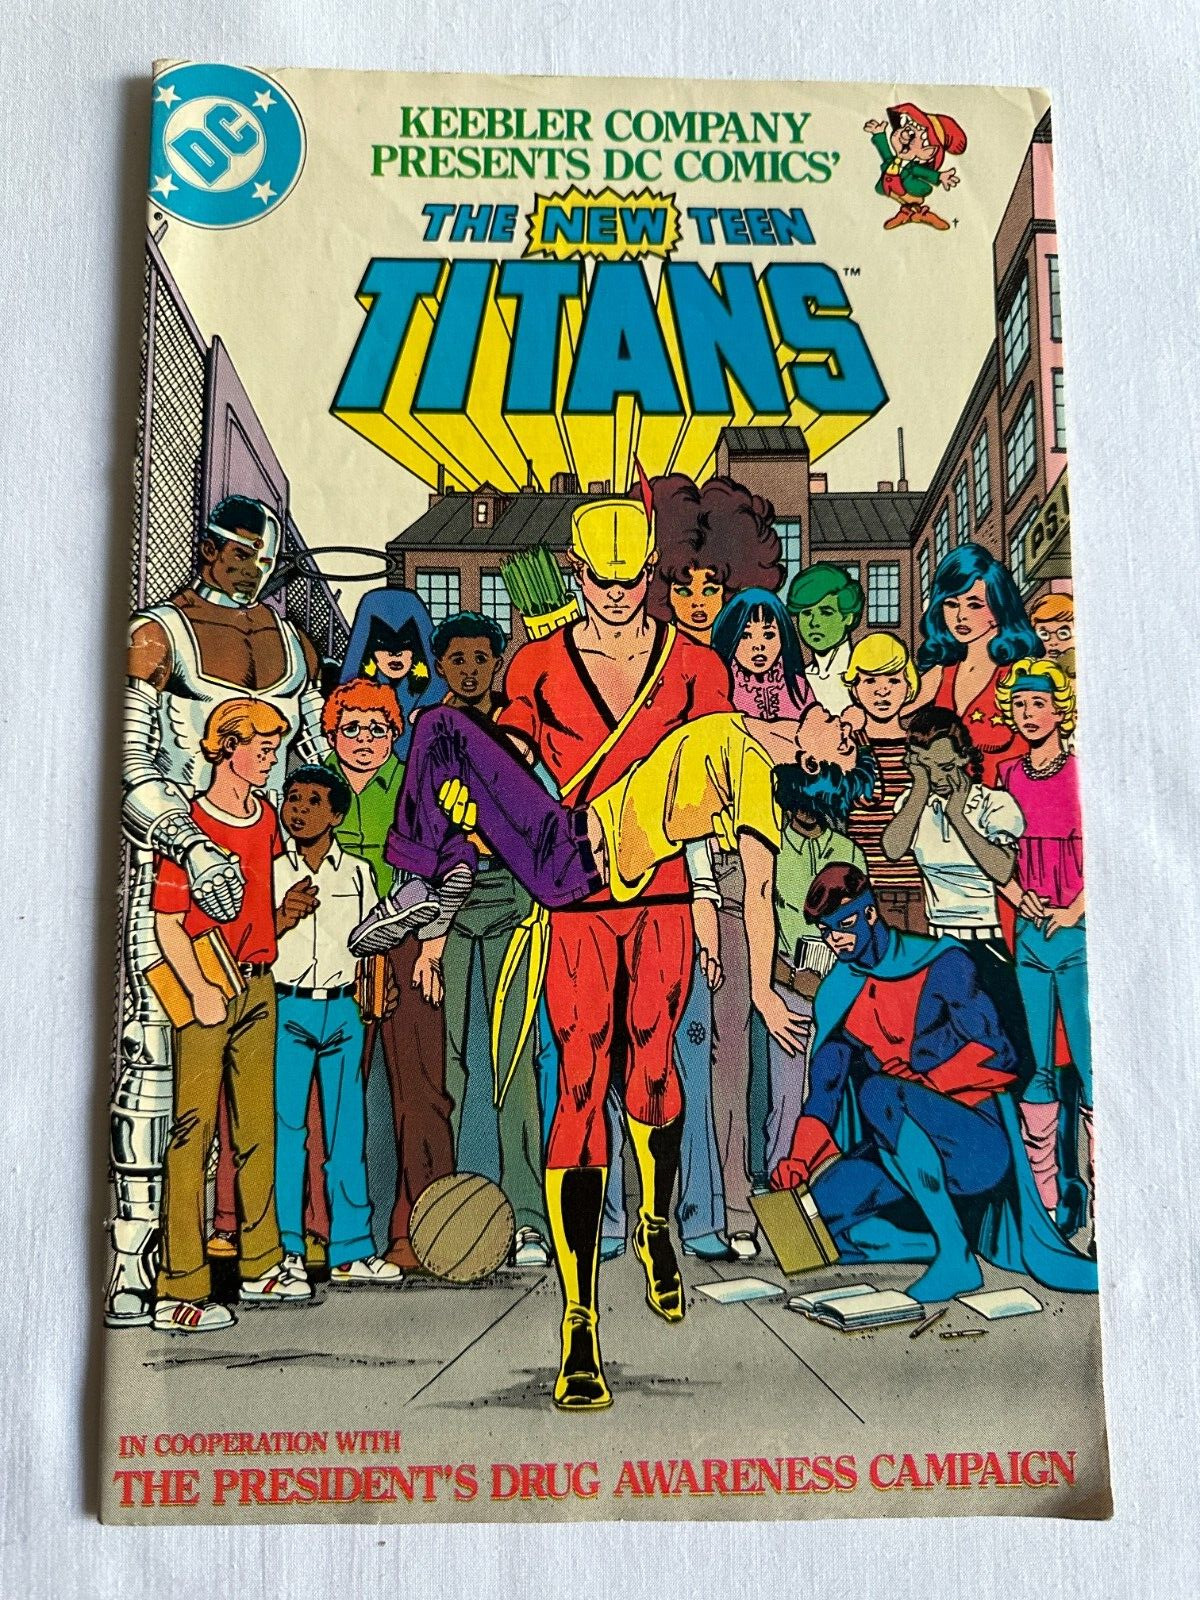 THE NEW TEEN TITANS KEEBLER COMPANY PRESENTS DC COMICS